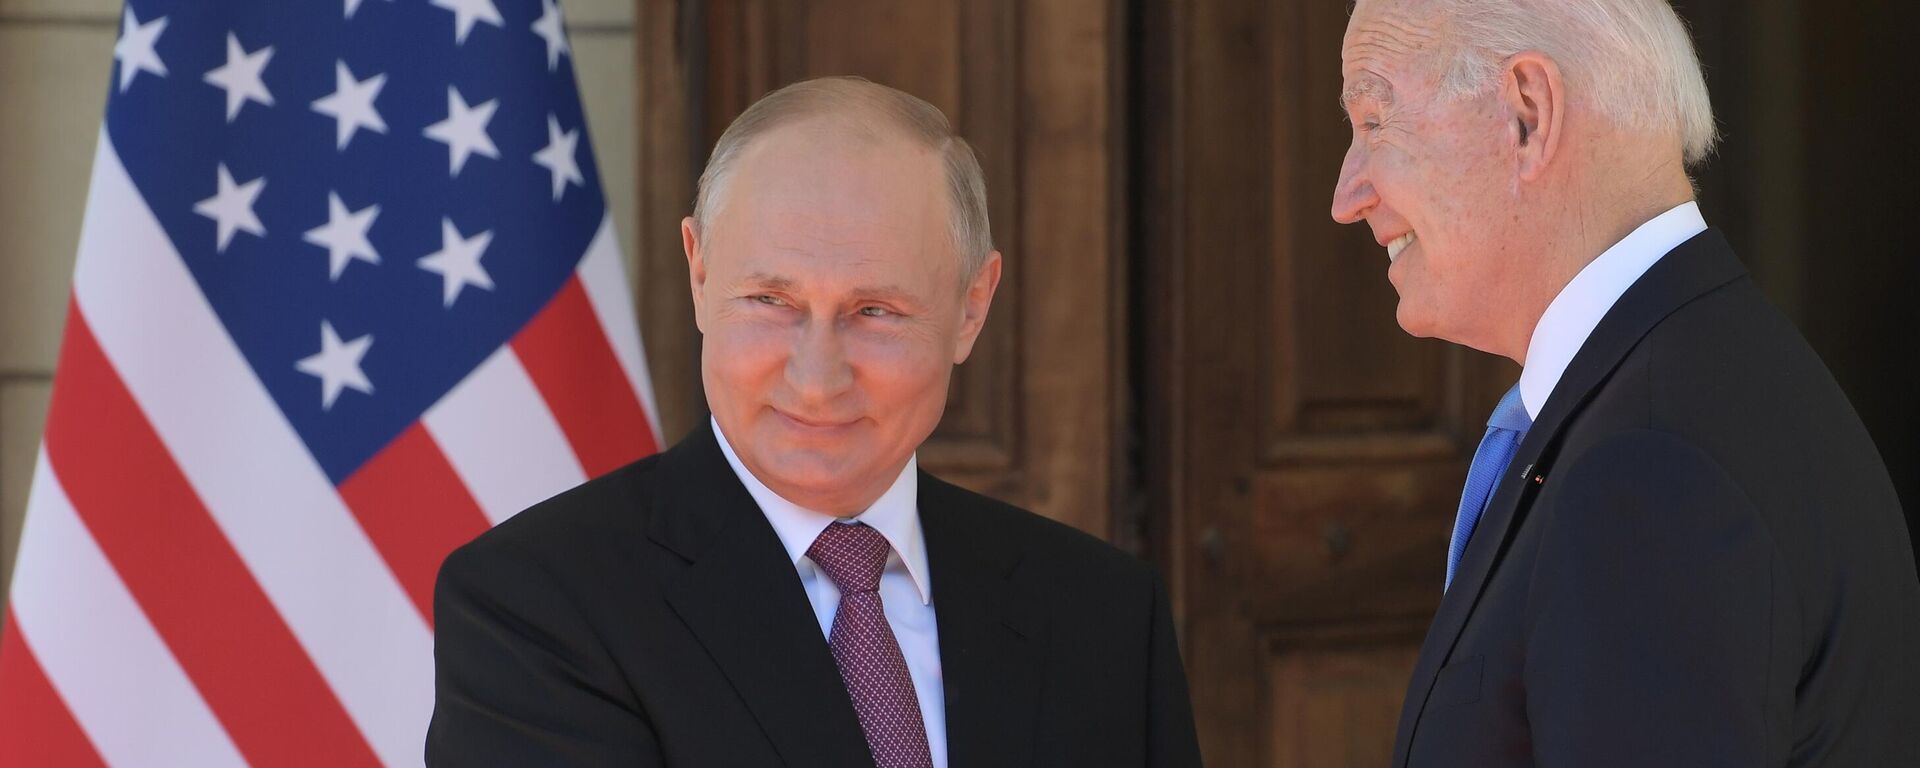 Vladimiras Putinas ir Džo Baidenas - Sputnik Lietuva, 1920, 21.09.2021